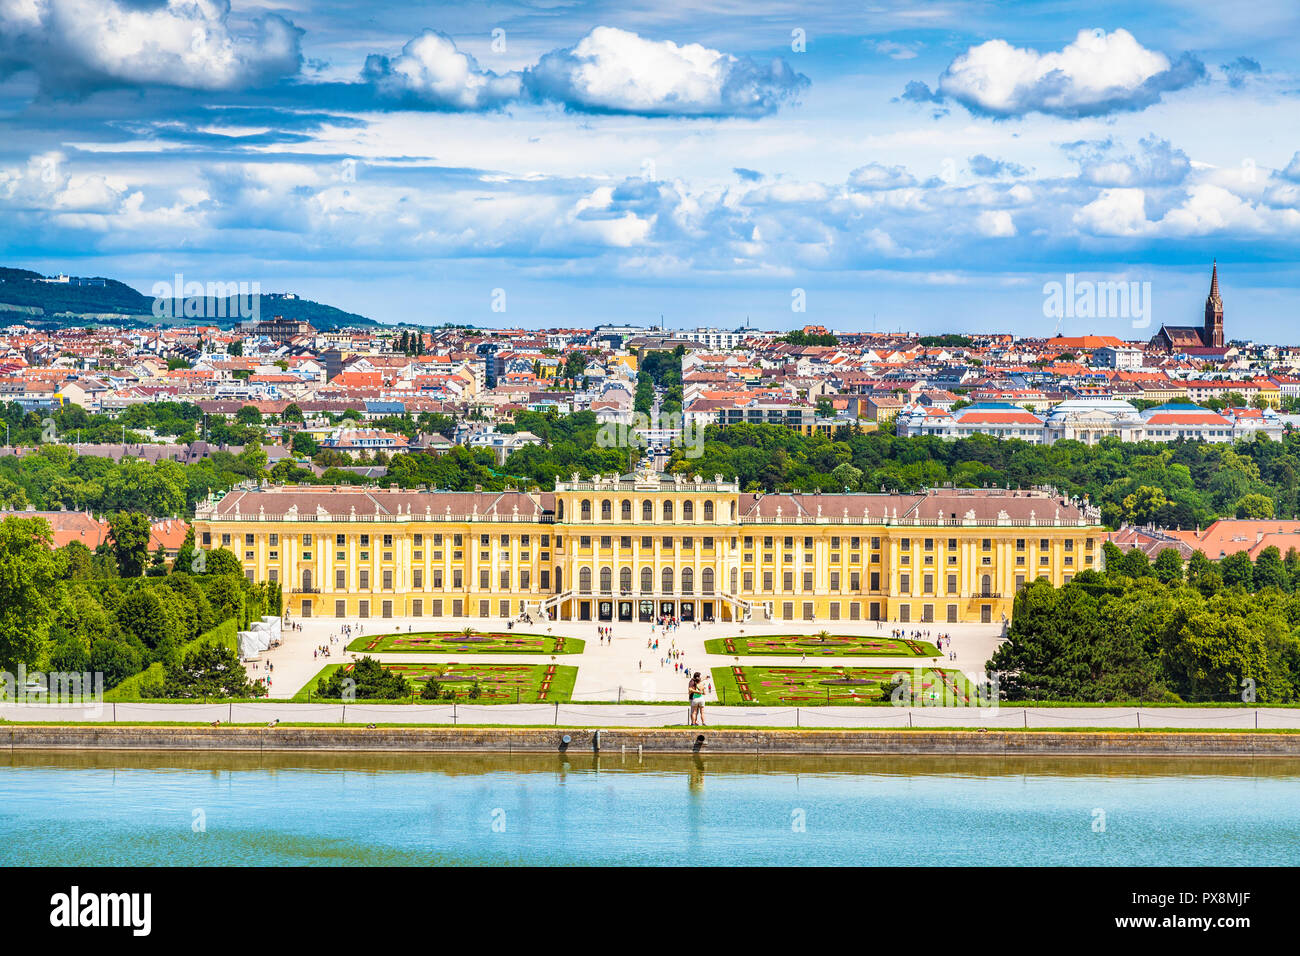 Klassische Ansicht des berühmten Schloss Schönbrunn mit malerischen großen Parterres Garten an einem schönen sonnigen Tag mit blauem Himmel und Wolken im Sommer, Wien, Österreich Stockfoto